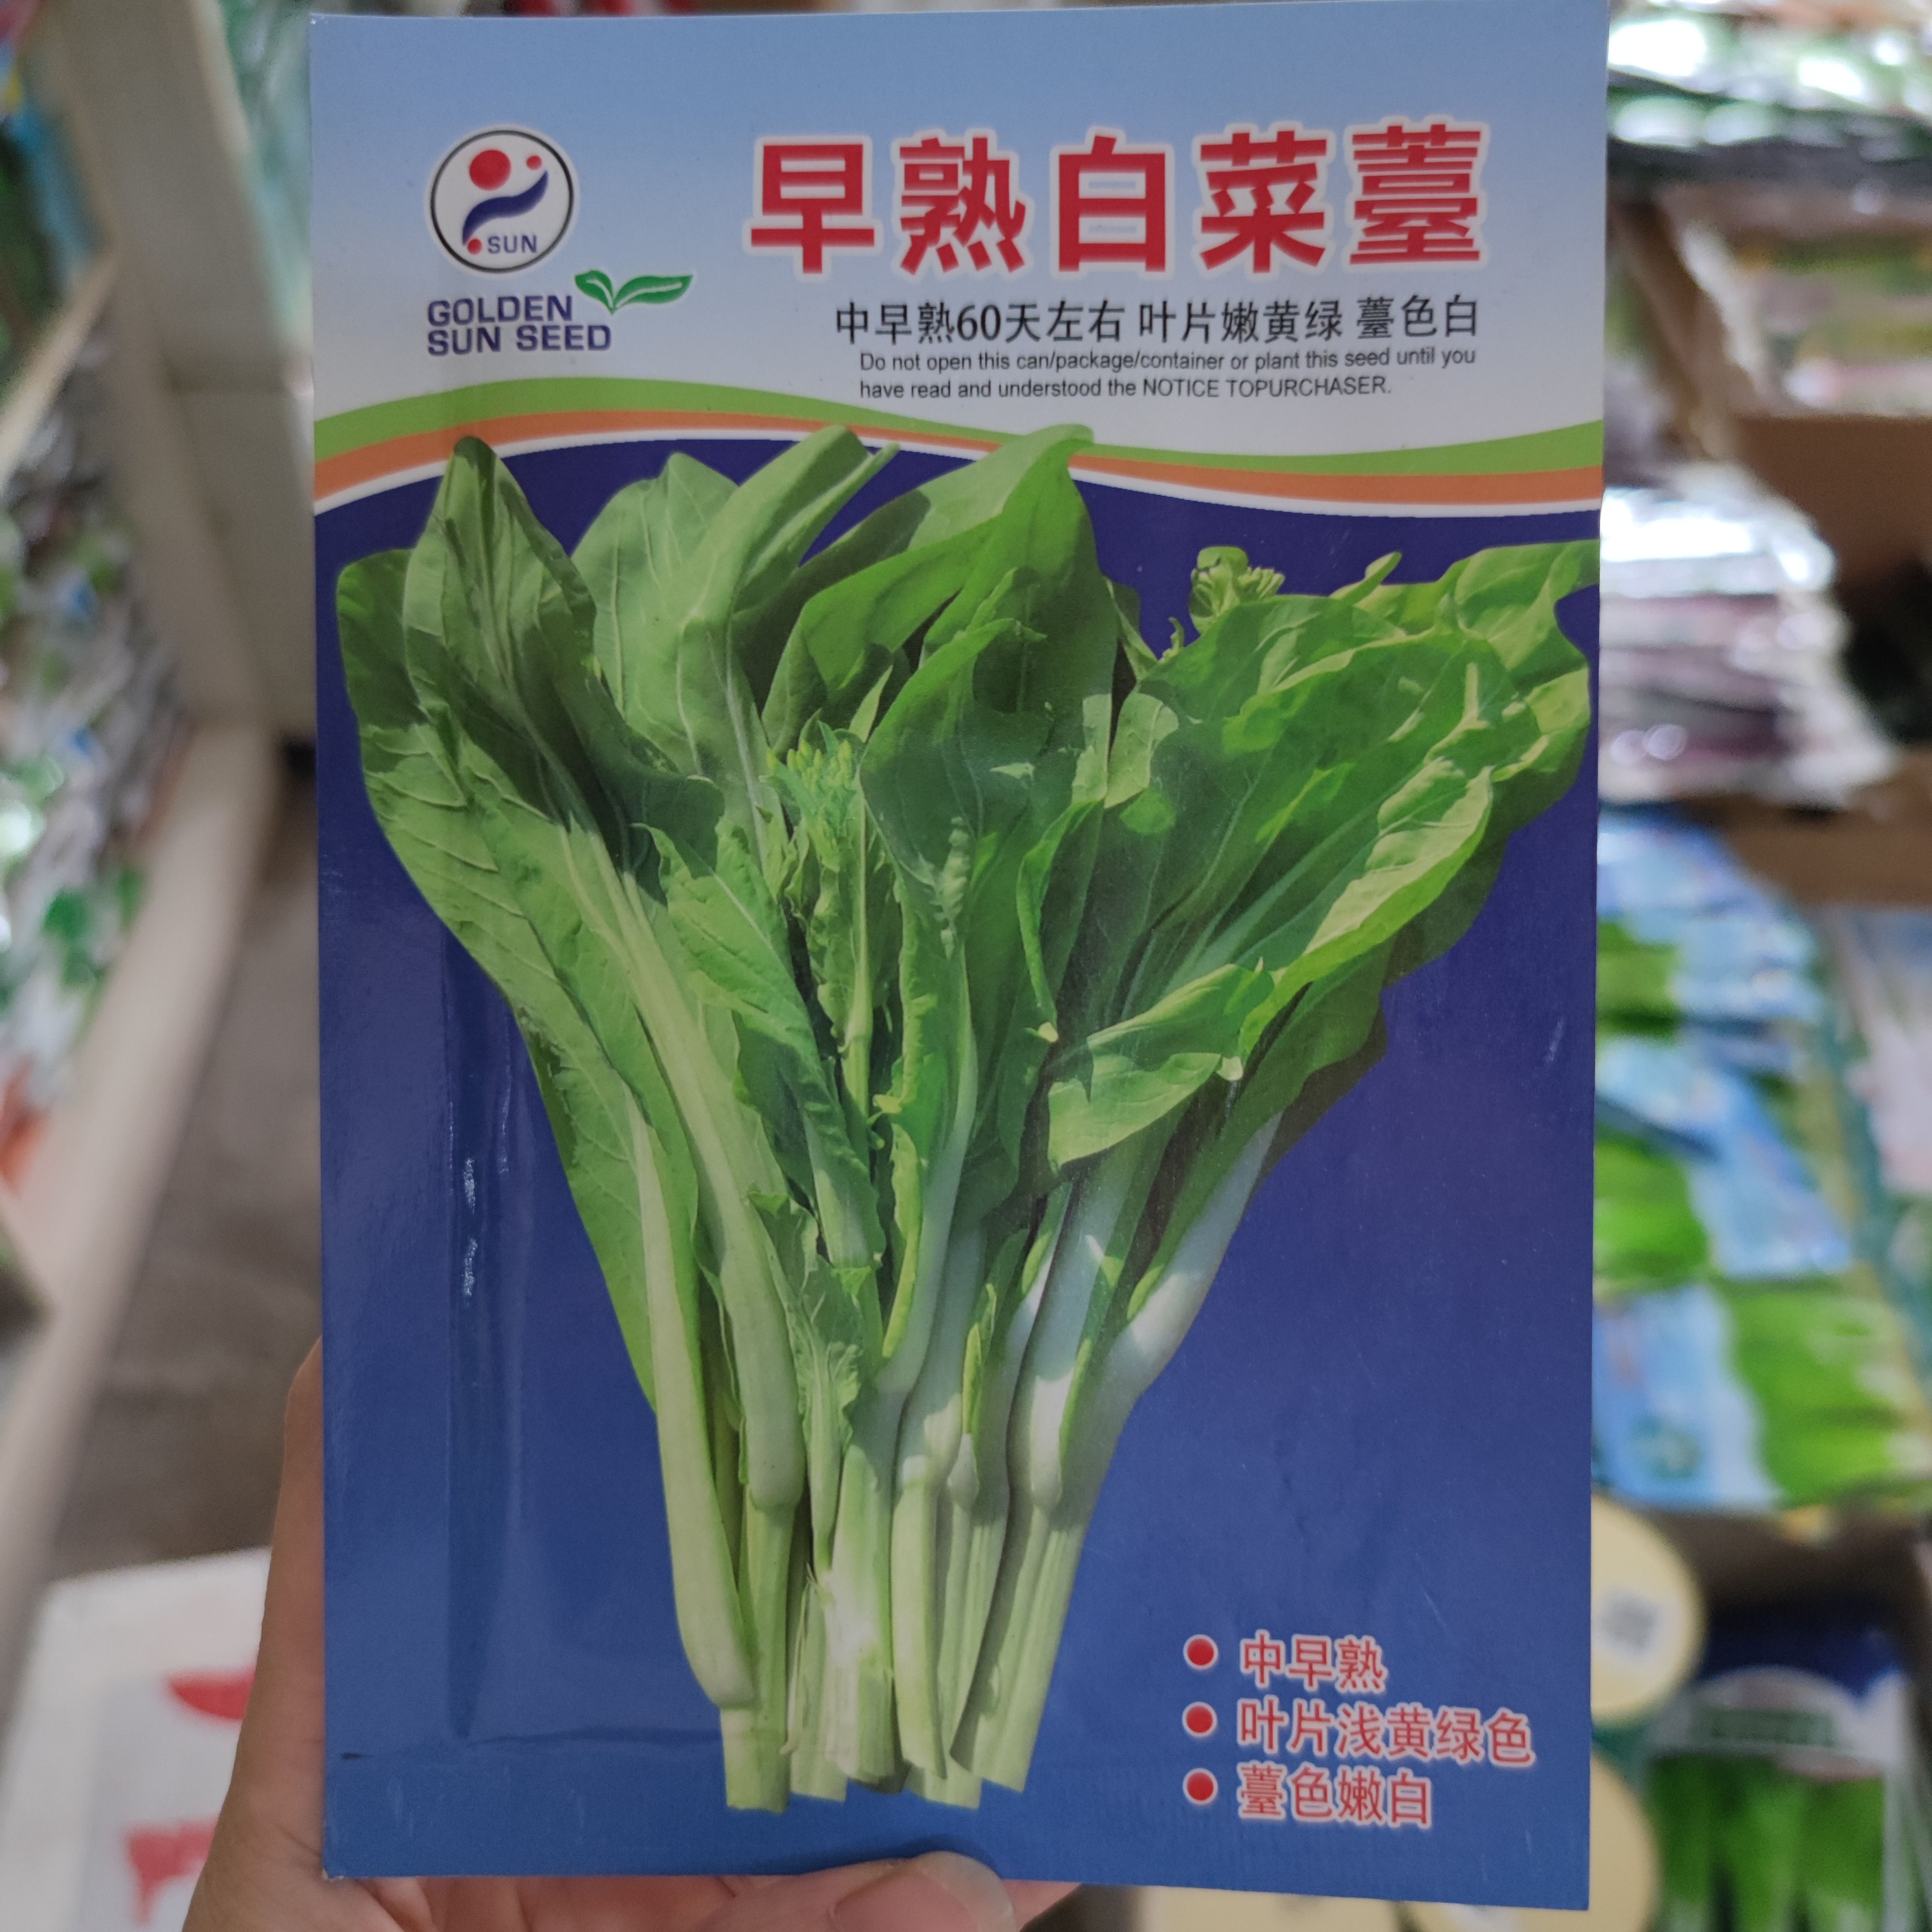 武汉金阳红早熟白菜苔种子 60天上市 叶片黄绿 口感甜脆适应性广